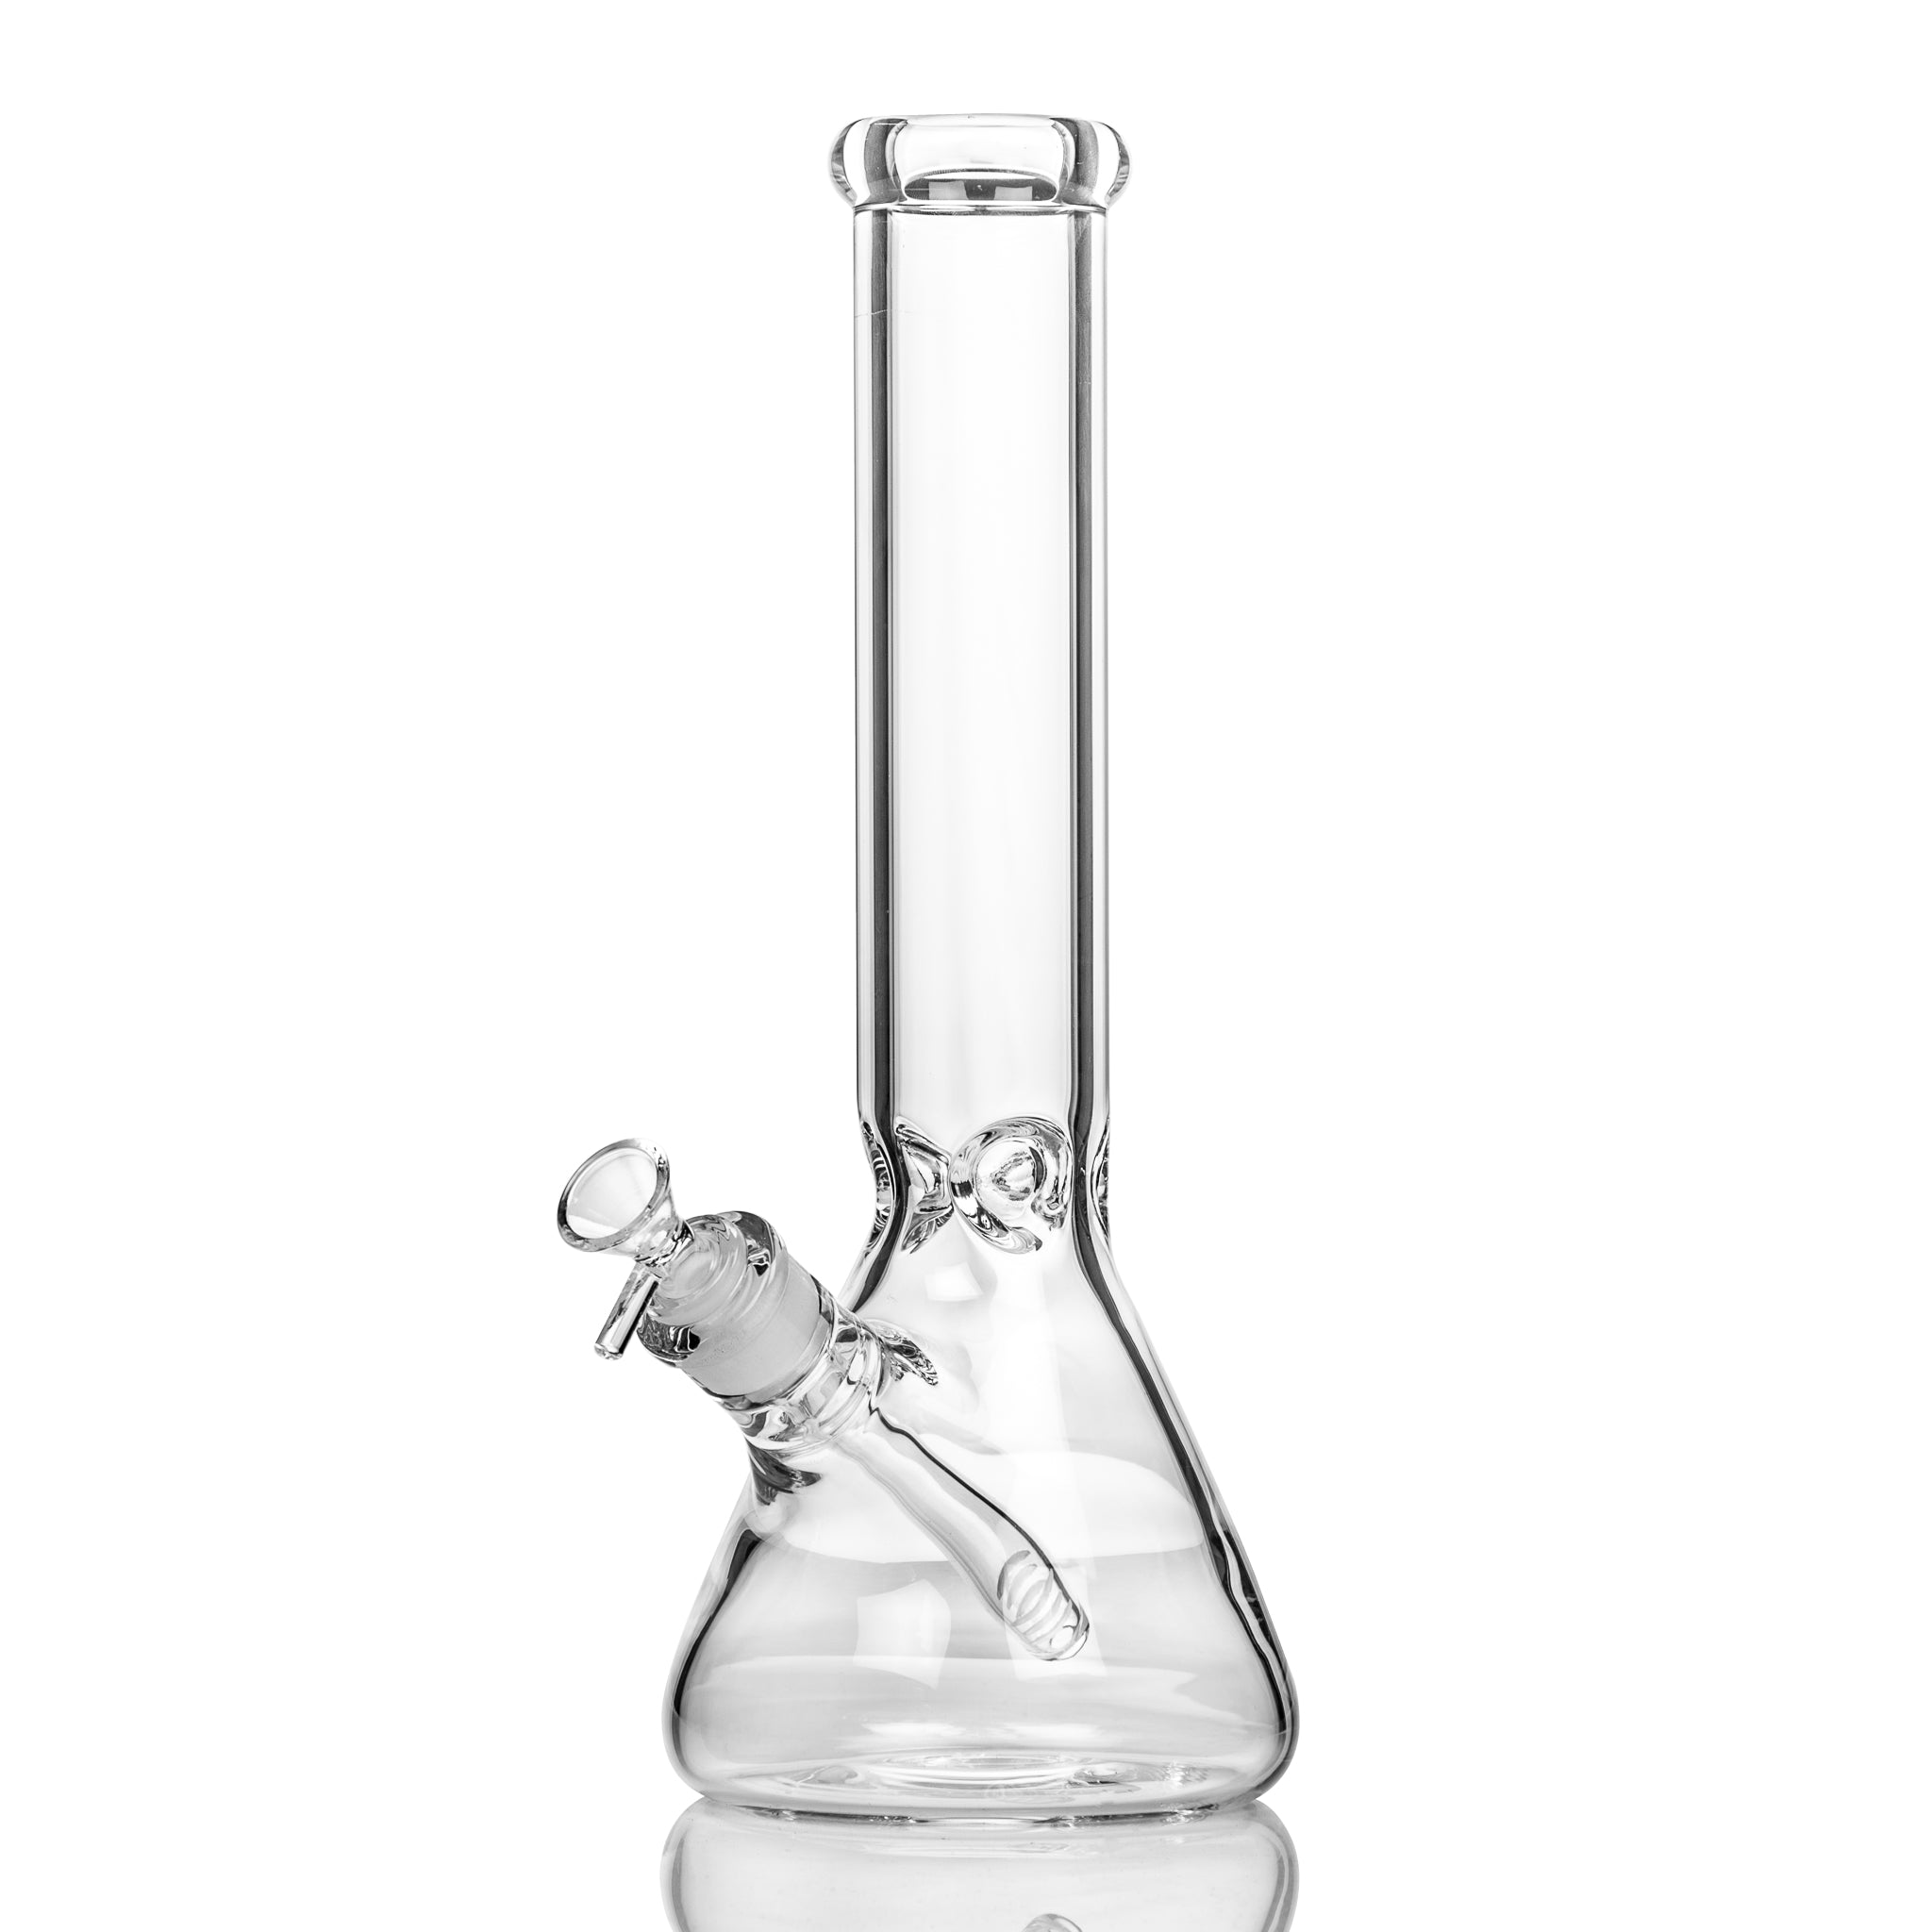 Strong 34cm clear glass beaker bong from easy bong Australia.